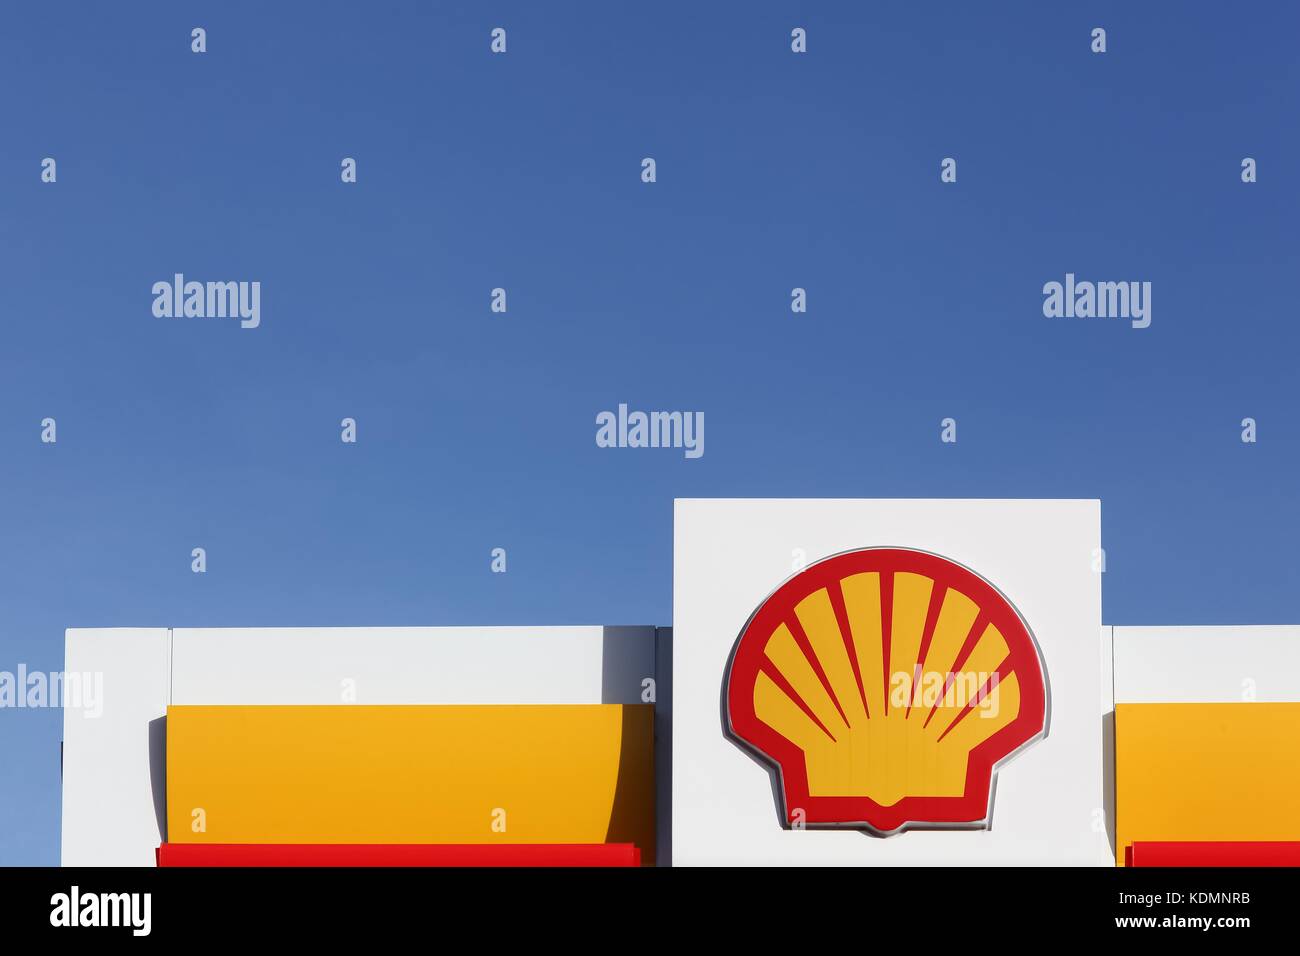 Aarhus, Danimarca - 8 novembre 2015: shell logo su una stazione di gas Foto Stock